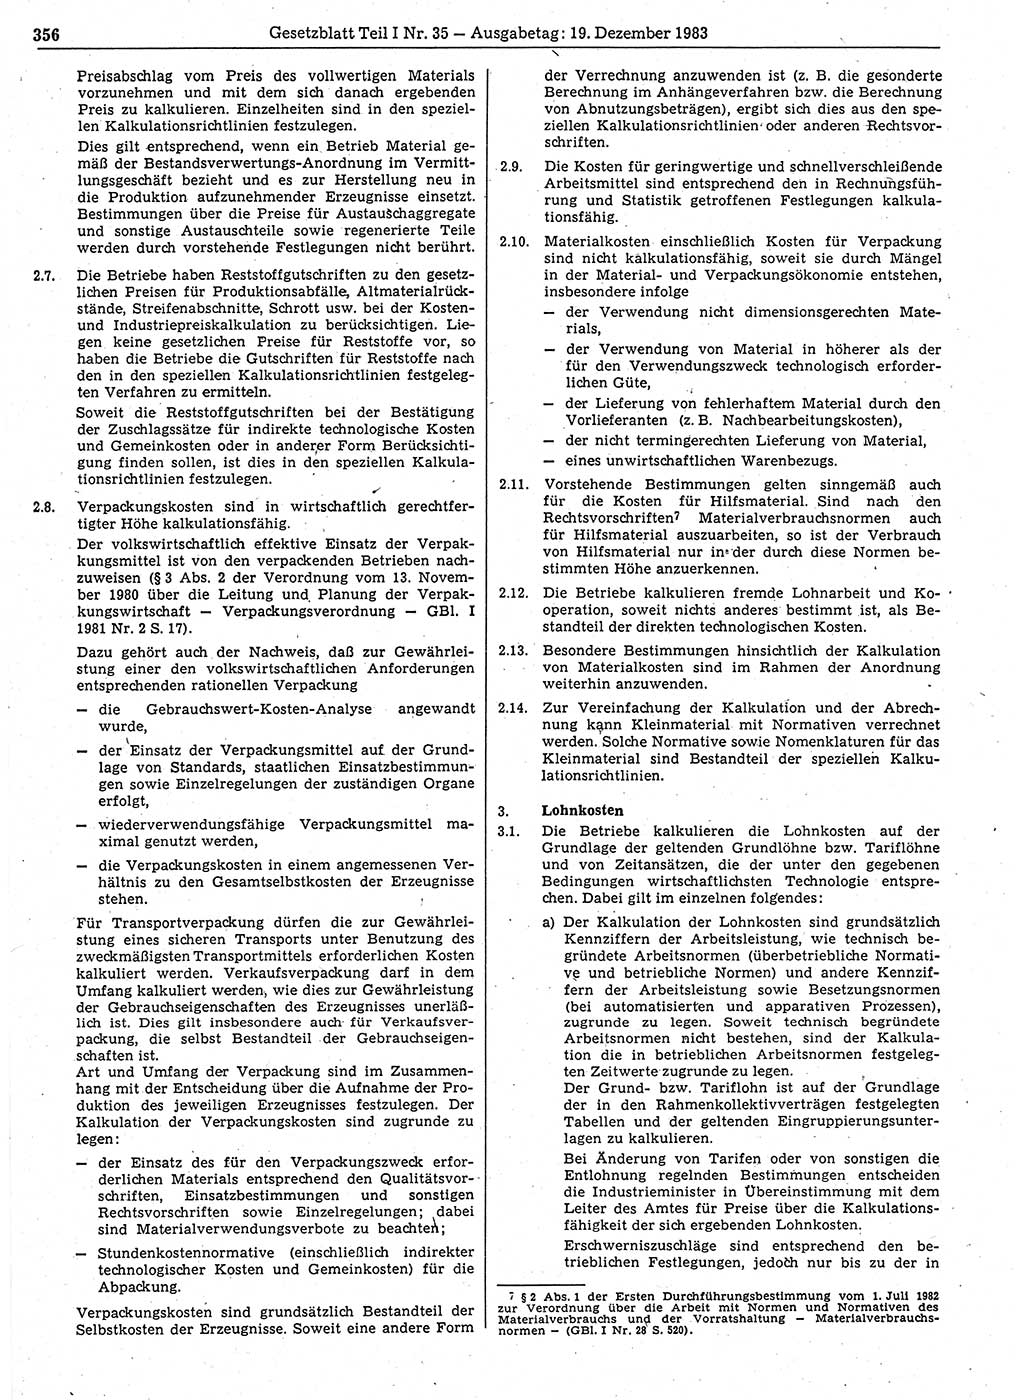 Gesetzblatt (GBl.) der Deutschen Demokratischen Republik (DDR) Teil Ⅰ 1983, Seite 356 (GBl. DDR Ⅰ 1983, S. 356)